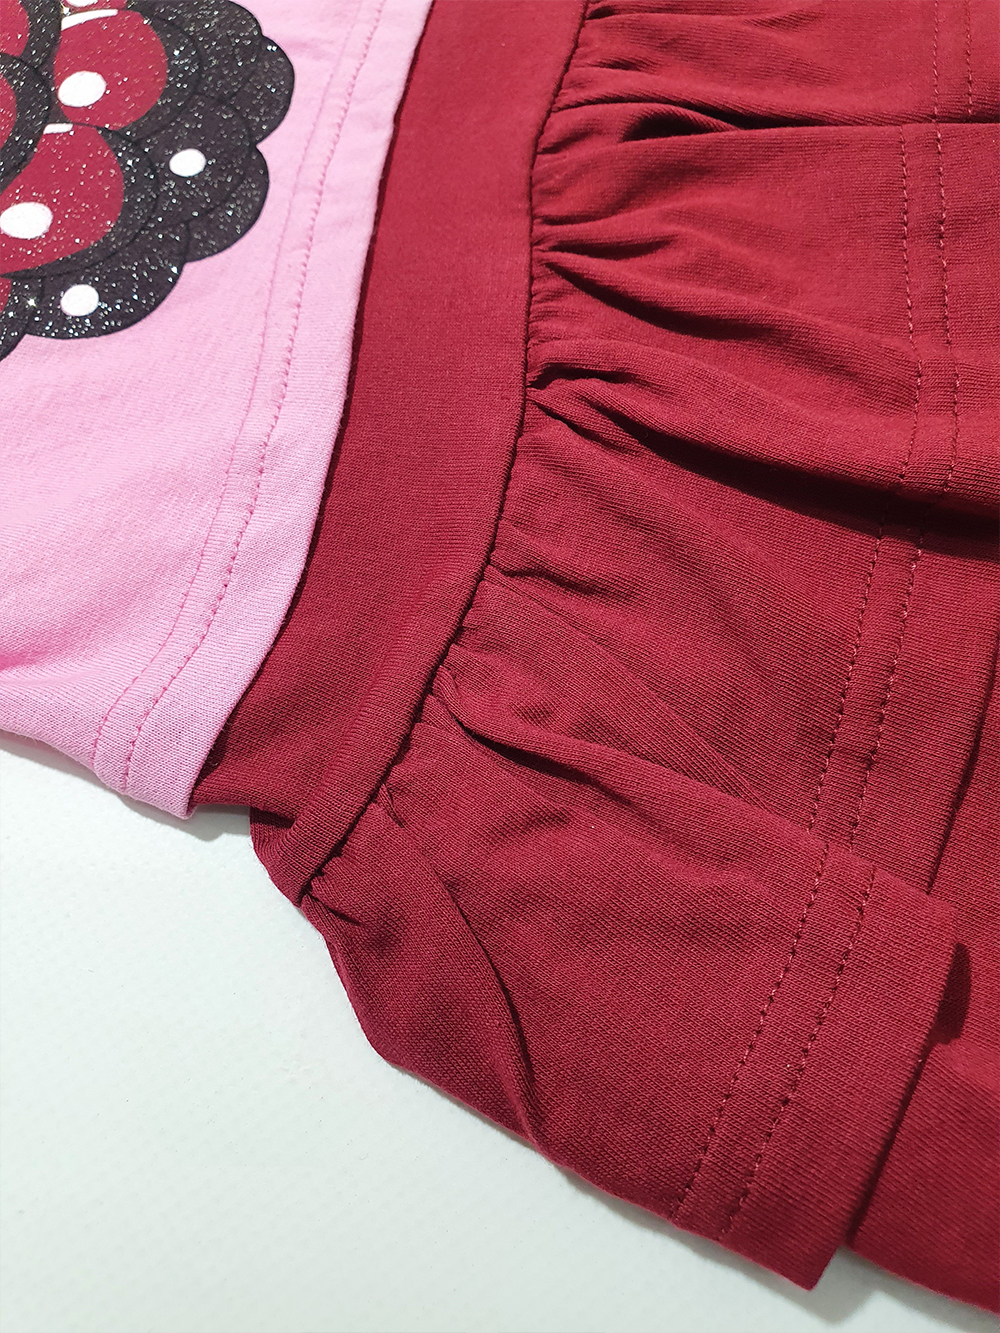 ПЛ-720 Платье для девочки (розово-бордовый малина)